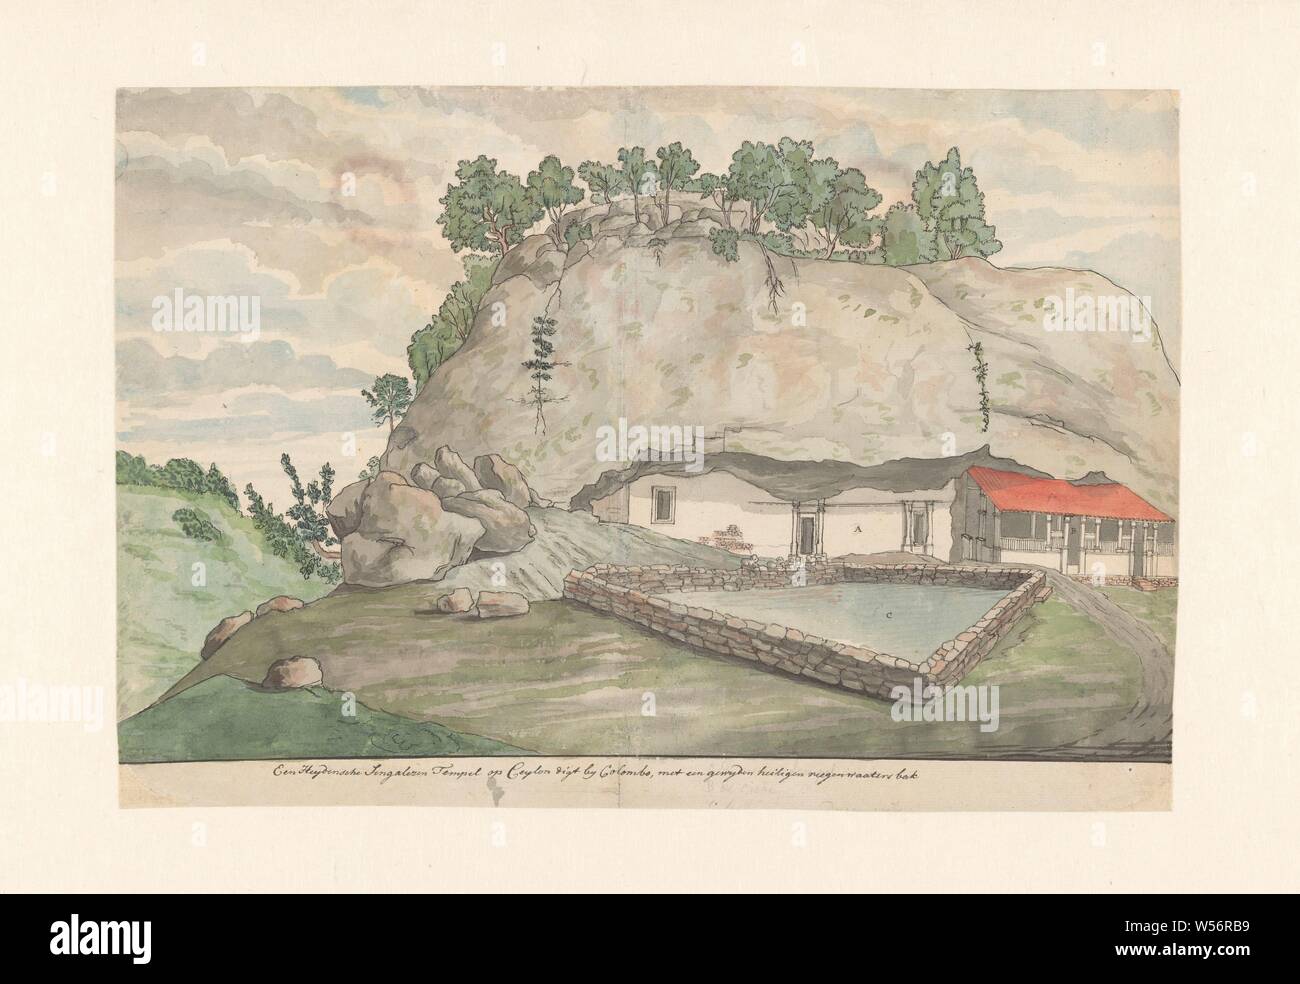 Adam's Mountain (Mulkirigala), entrée à l'image taillée dans la Chambres des roches, sanctuaire bouddhiste sur Ceylan, près de Mulgirigala. Bâtiments sous un rocher, une grotte bouddhique, par un bassin d'eau. Avec l'inscription, les lieux et objets de culte, de l'hindouisme, le bouddhisme, le jaïnisme, Mulkirigala, Dutch East India Company, Jan Brandes, Sri Lanka, 10-Oct-1785 - 30-Dec-1785, papier, encre, crayon, pinceau, h 263 mm × W 388 mm Banque D'Images